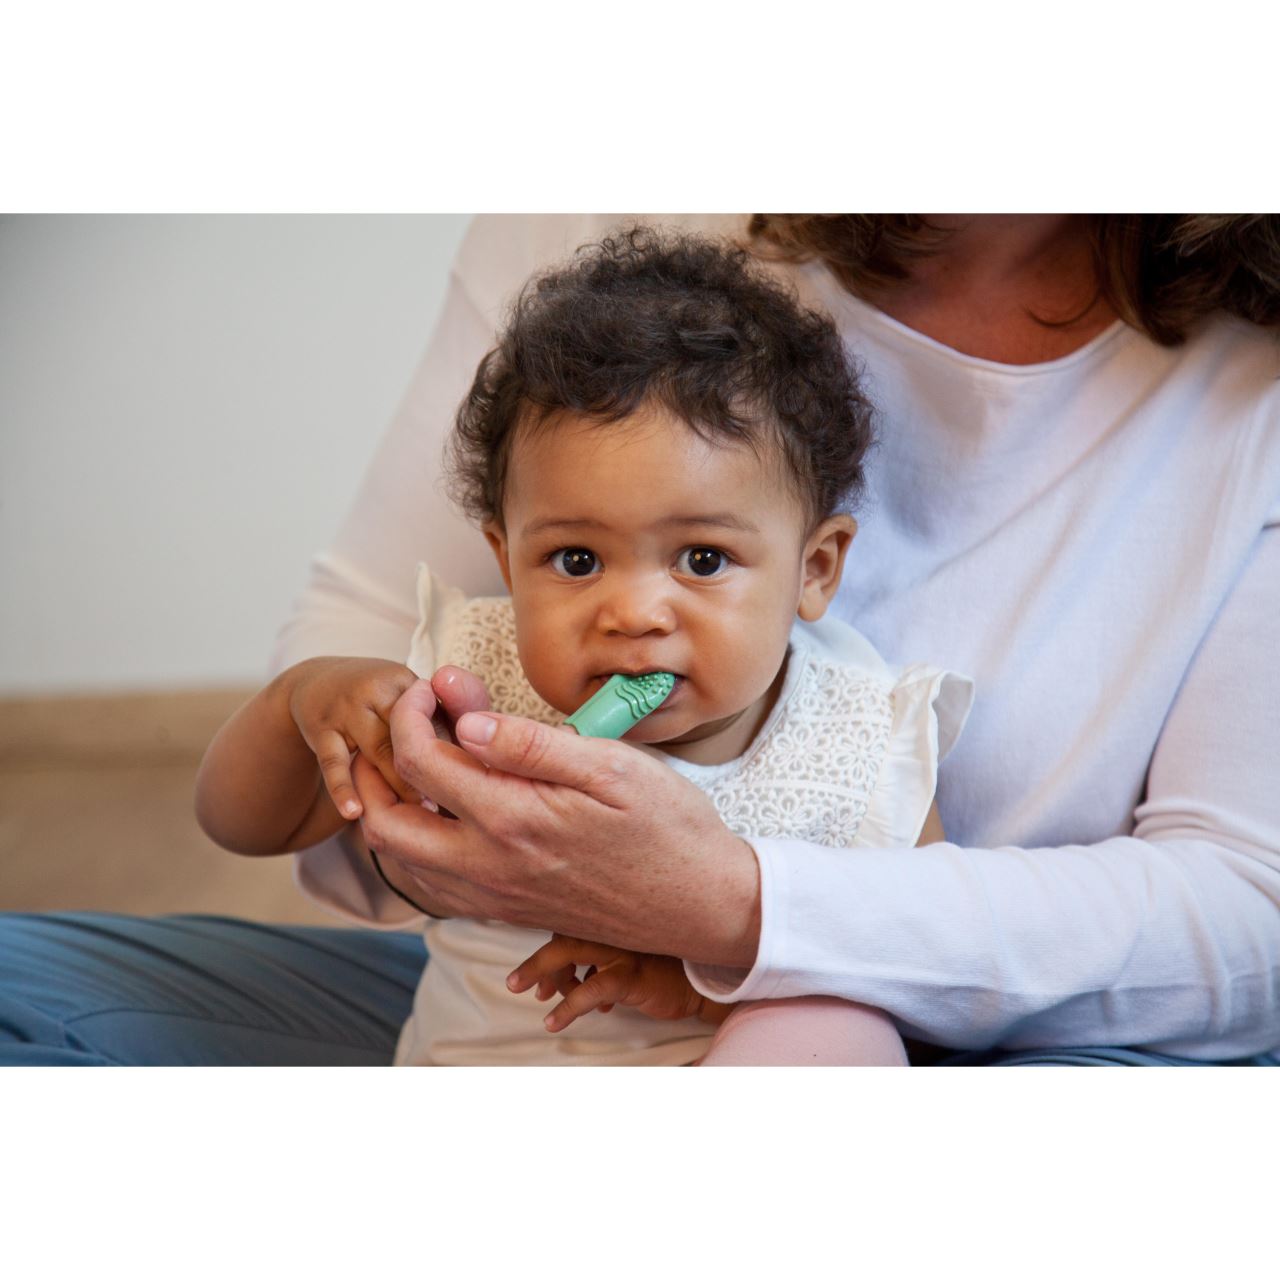 Periuta de dinti pentru bebelusi, din cauciuc natural, pentru folosire pe deget, Gruenspecht 687-00 Children SafetyCare